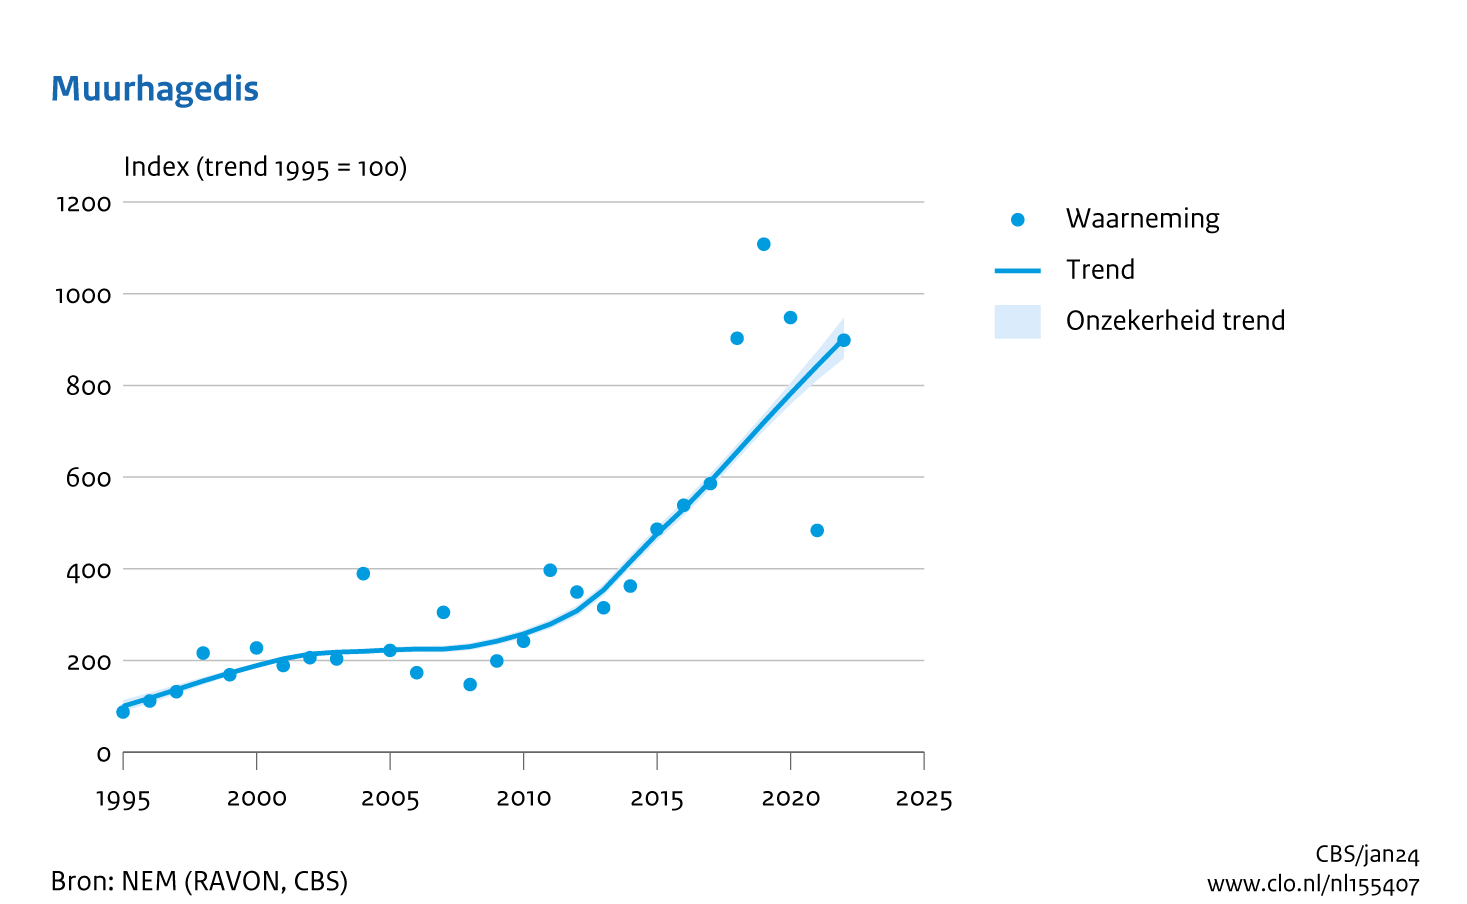 De grafiek Muurhagedis laat zien dat deze soort vanaf het eerste teljaar (1995, index = 100) steeds in aantal stijgt tot het laatste teljaar (index = 902).